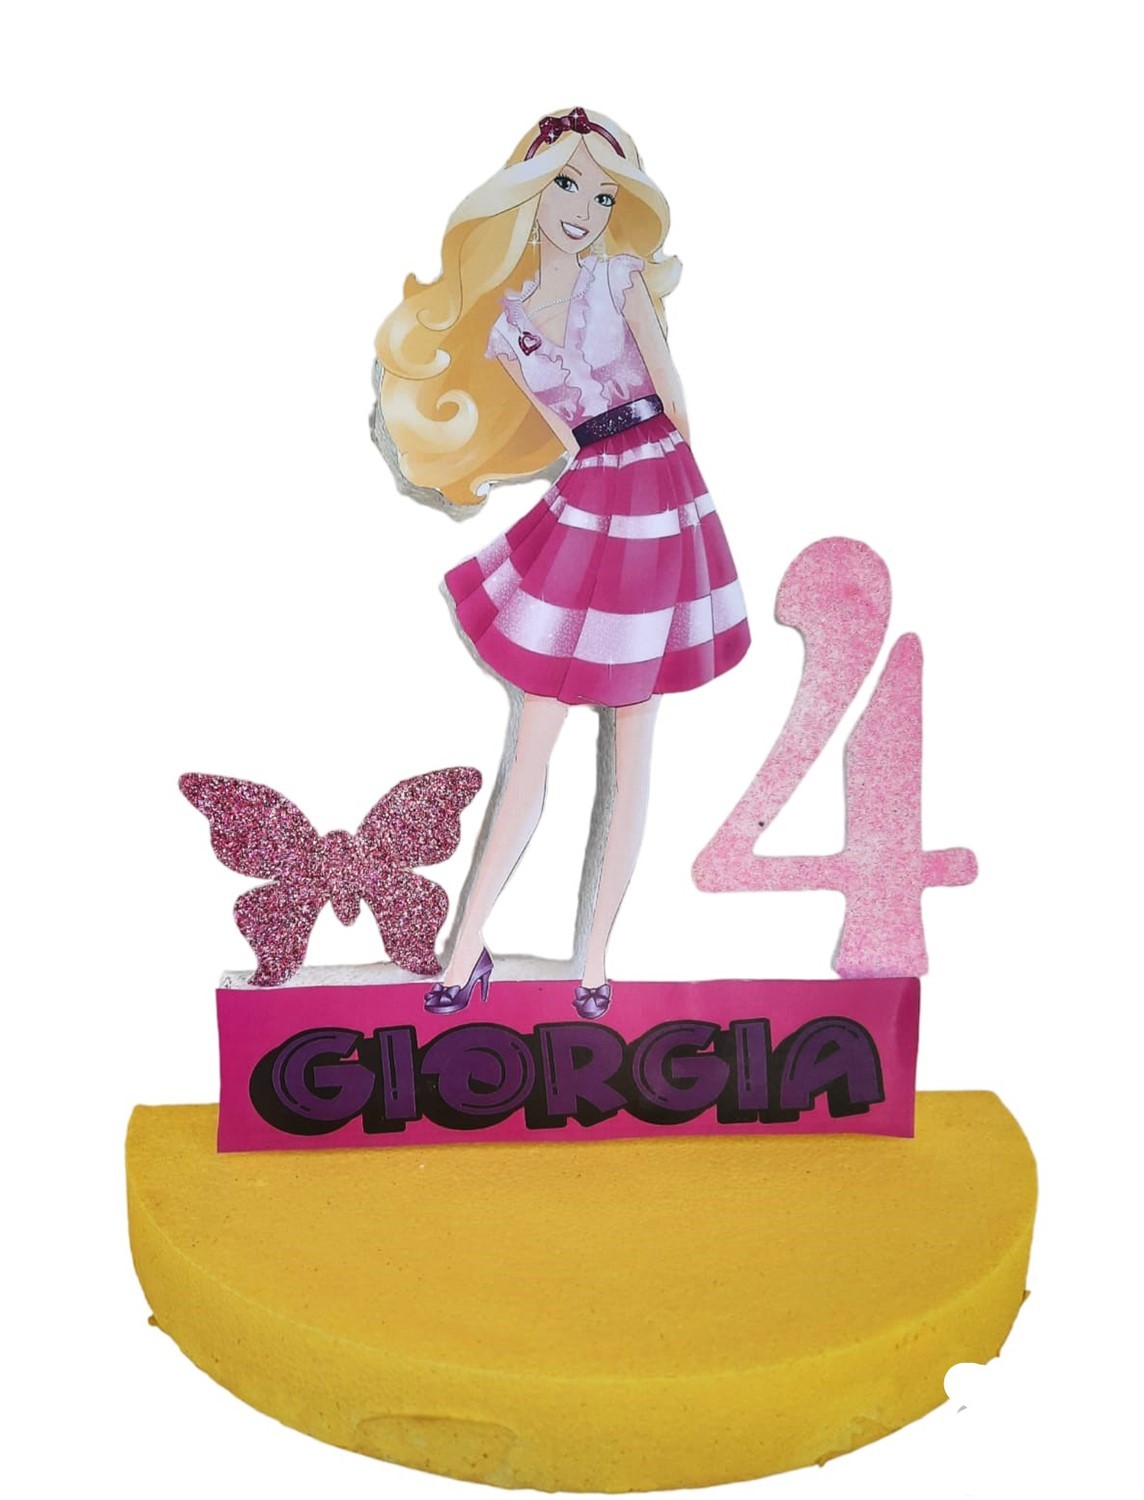 Barbie bambola tema festa di compleanno decorazione stoviglie